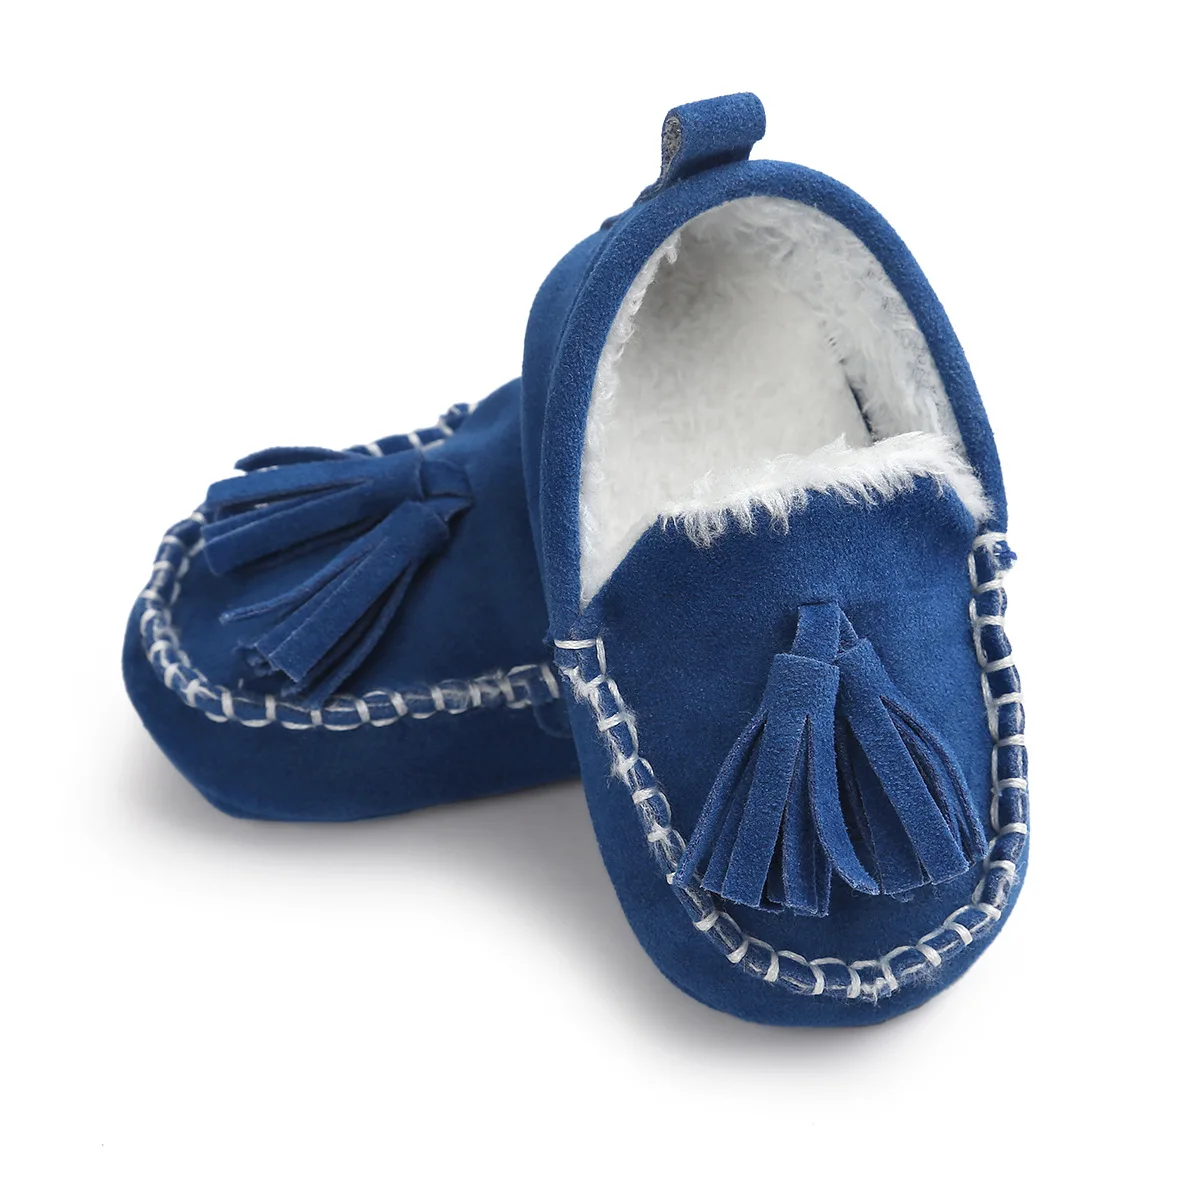 ROMIRUS/зима кисточкой детские мокасины мягкая подошва для Moccasin-gommino новорожденных обувь из искусственной кожи Prewalkers сапоги